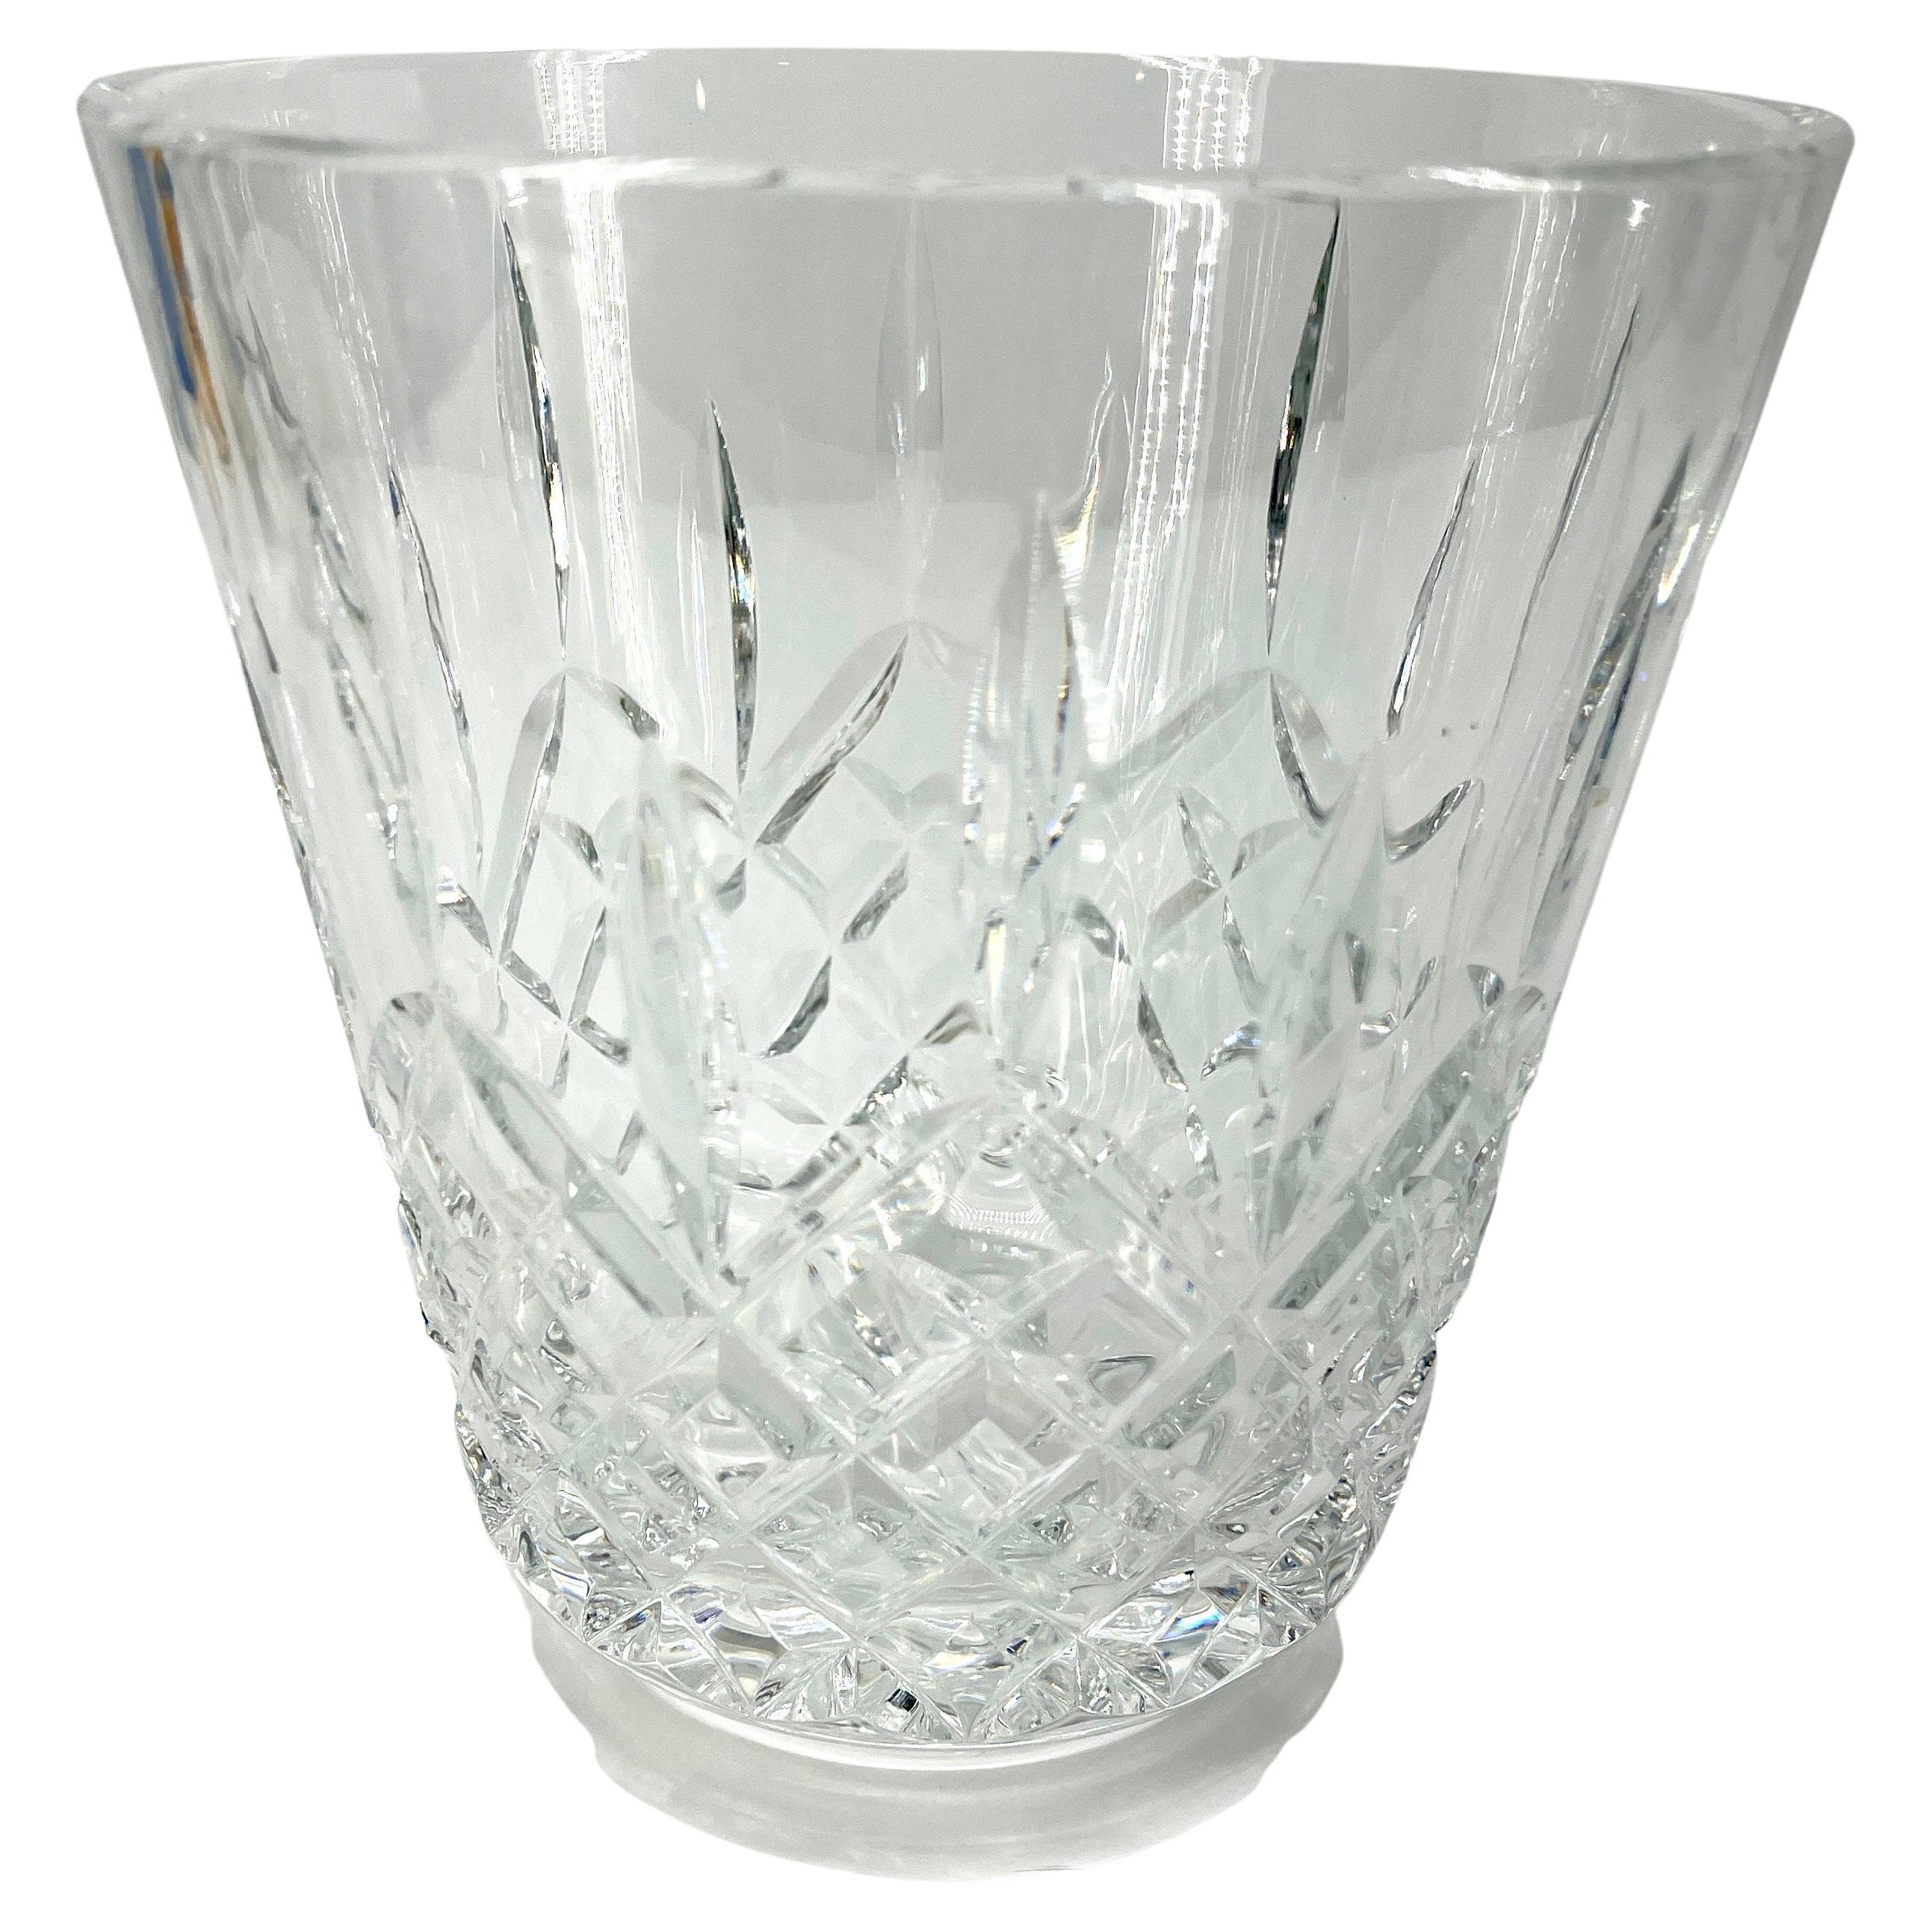 Seau à champagne en cristal Lismore, Waterford 

Le motif Lismore de Waterford est une combinaison étonnante de brillance et de clarté, caractérisée par la clarté stupéfiante du cristal taillé en diamant et en coin, signature de Lismore. La